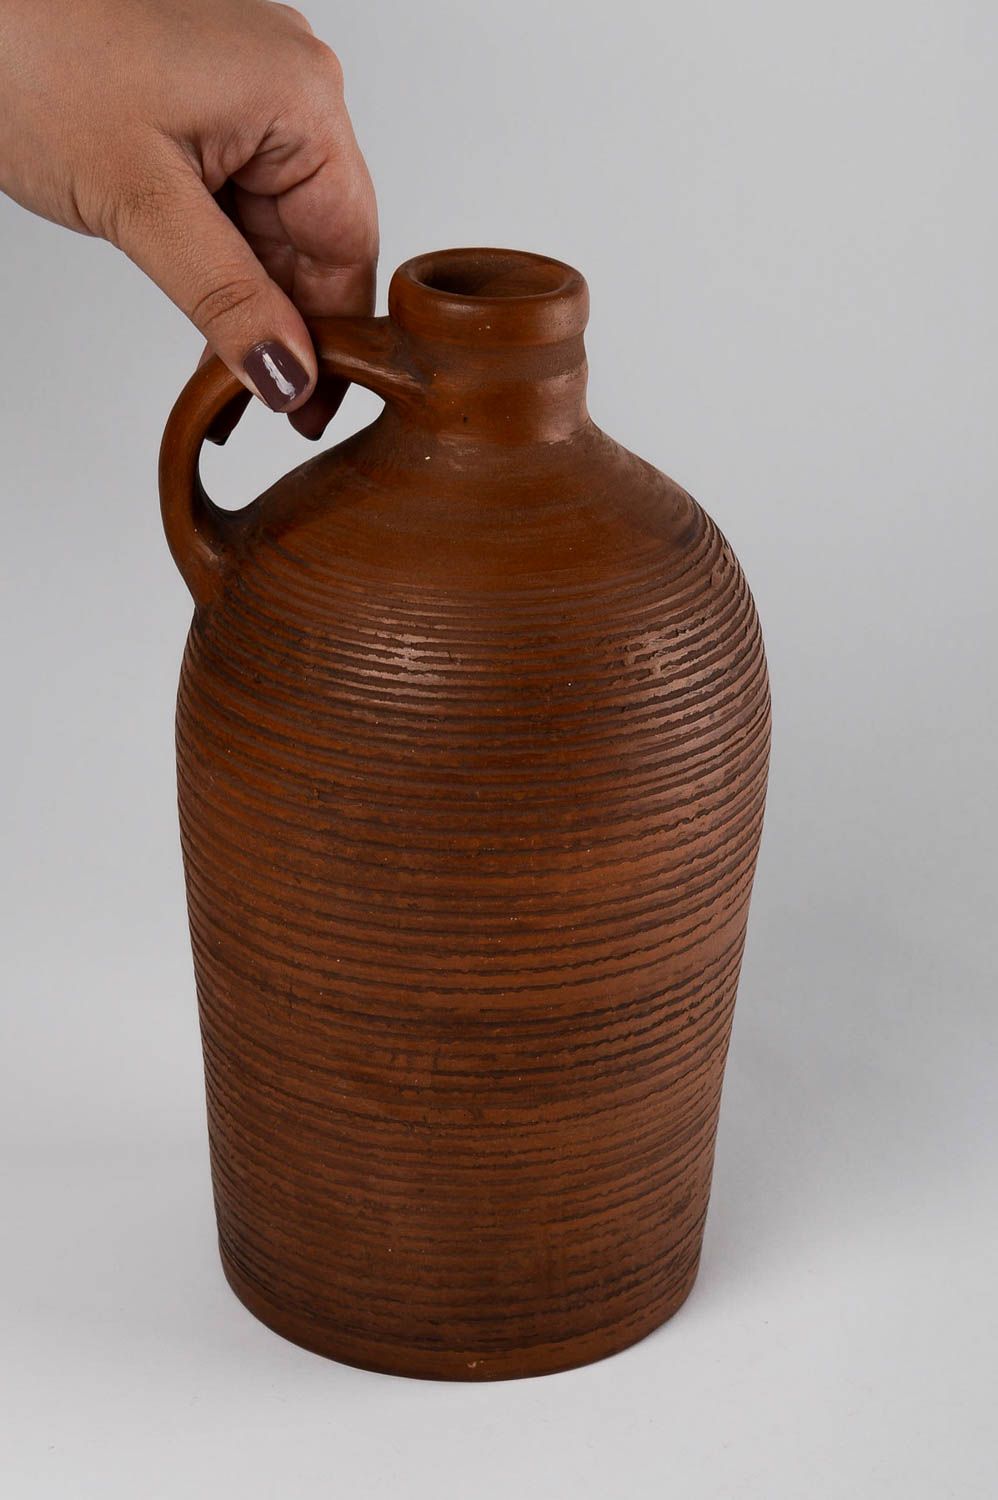 Handmade Flasche aus Ton Haus Deko Geschenk Flasche Keramik Geschirr schön foto 5